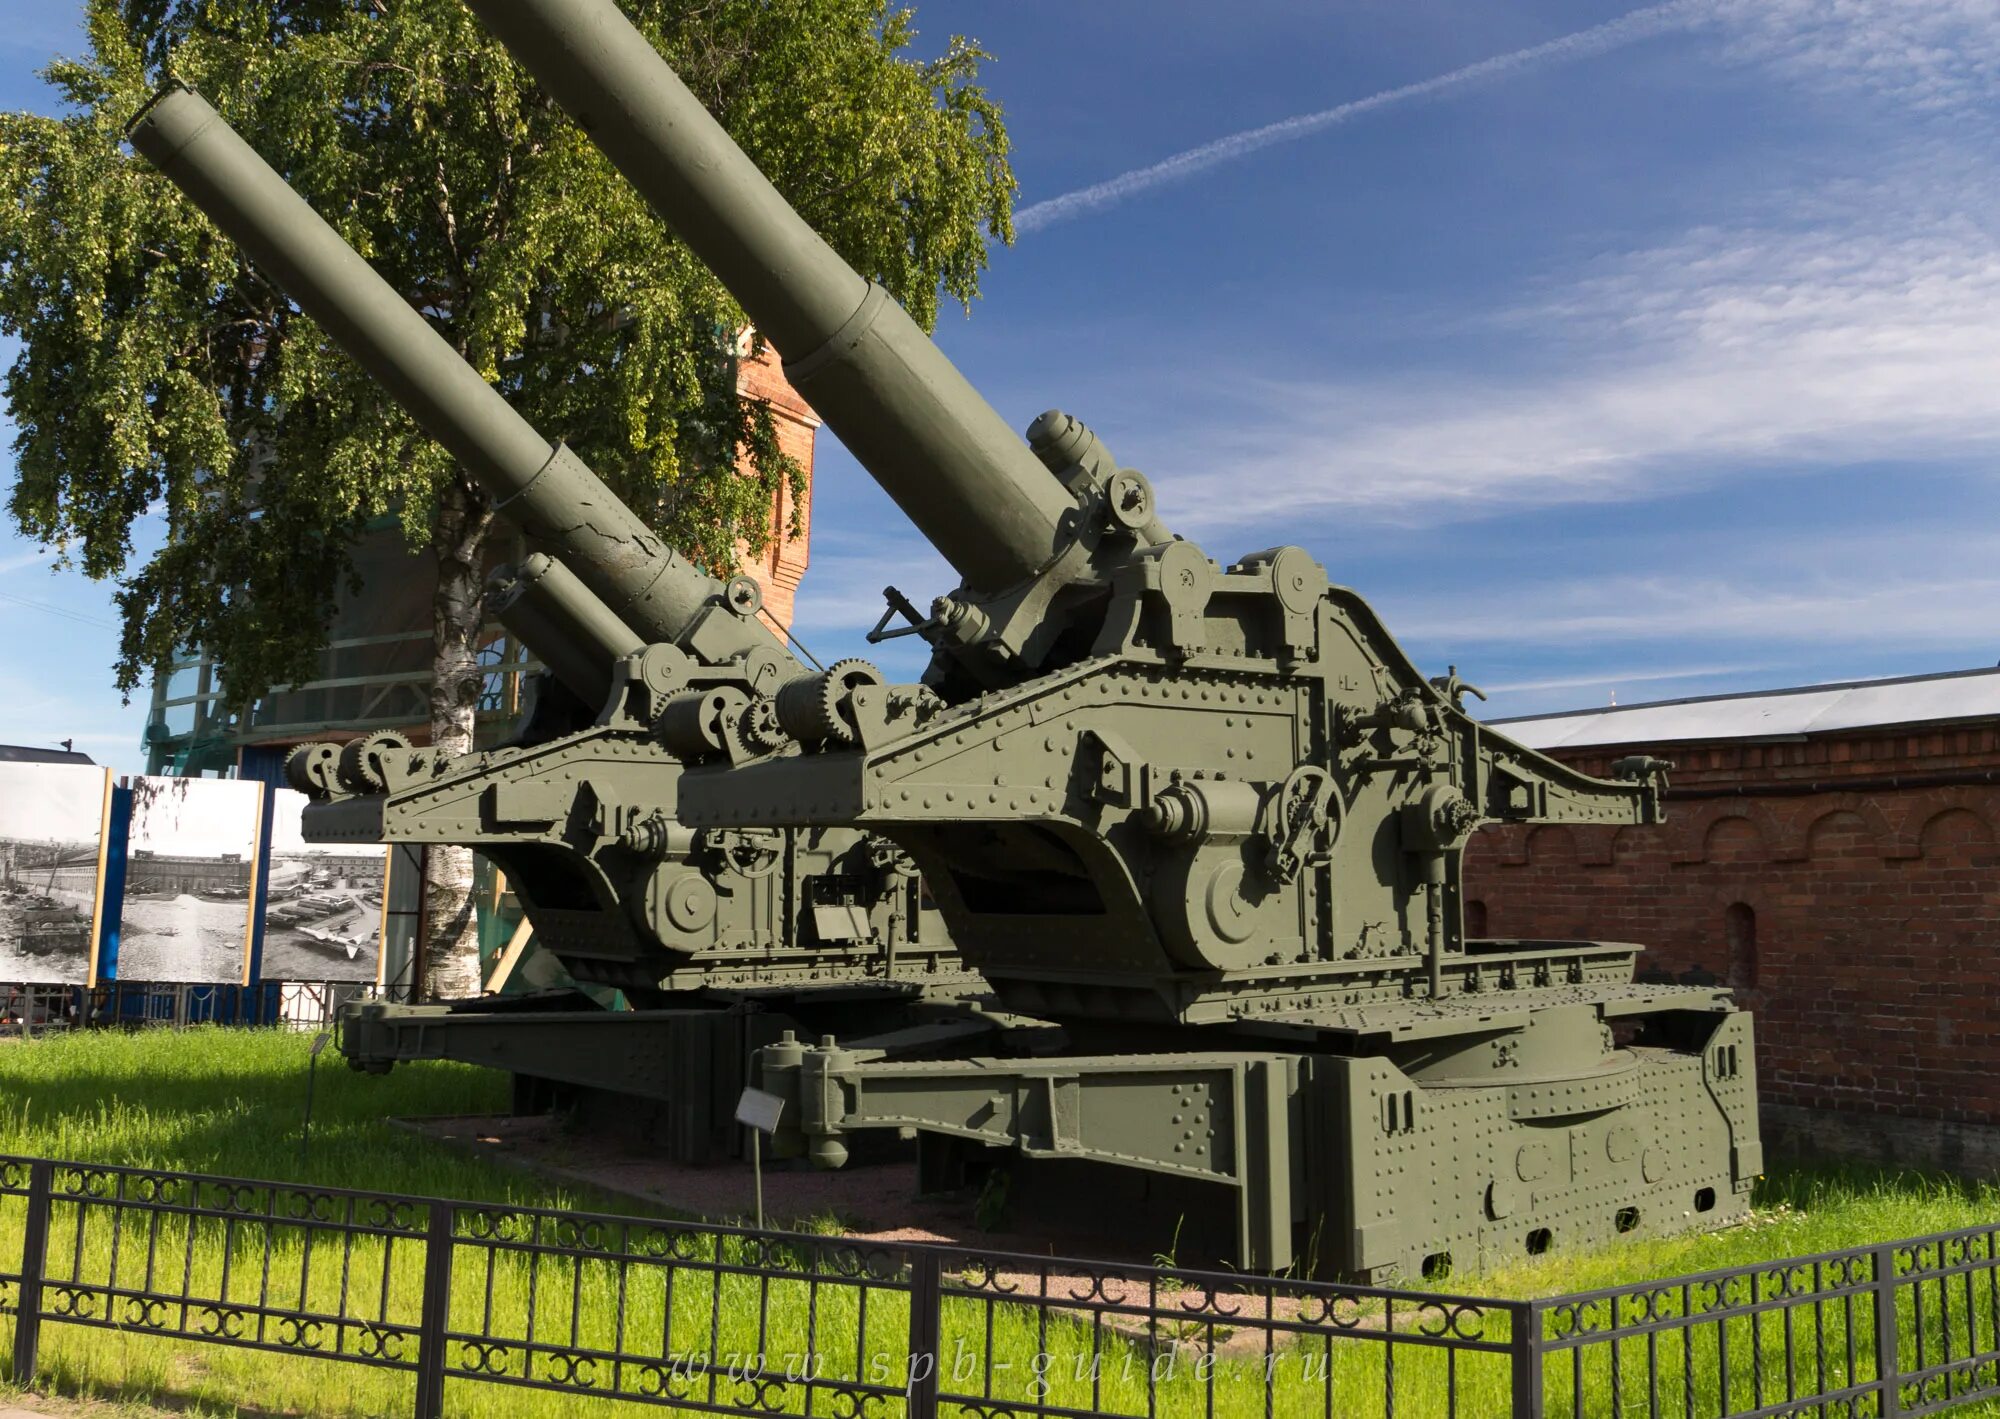 Бр-17 210-мм пушка. Гаубицы у музея артиллерии в Санкт-Петербурге. 210 Мм пушка бр 17 обр 1939 г. СПБ военно исторический музей артиллерии.